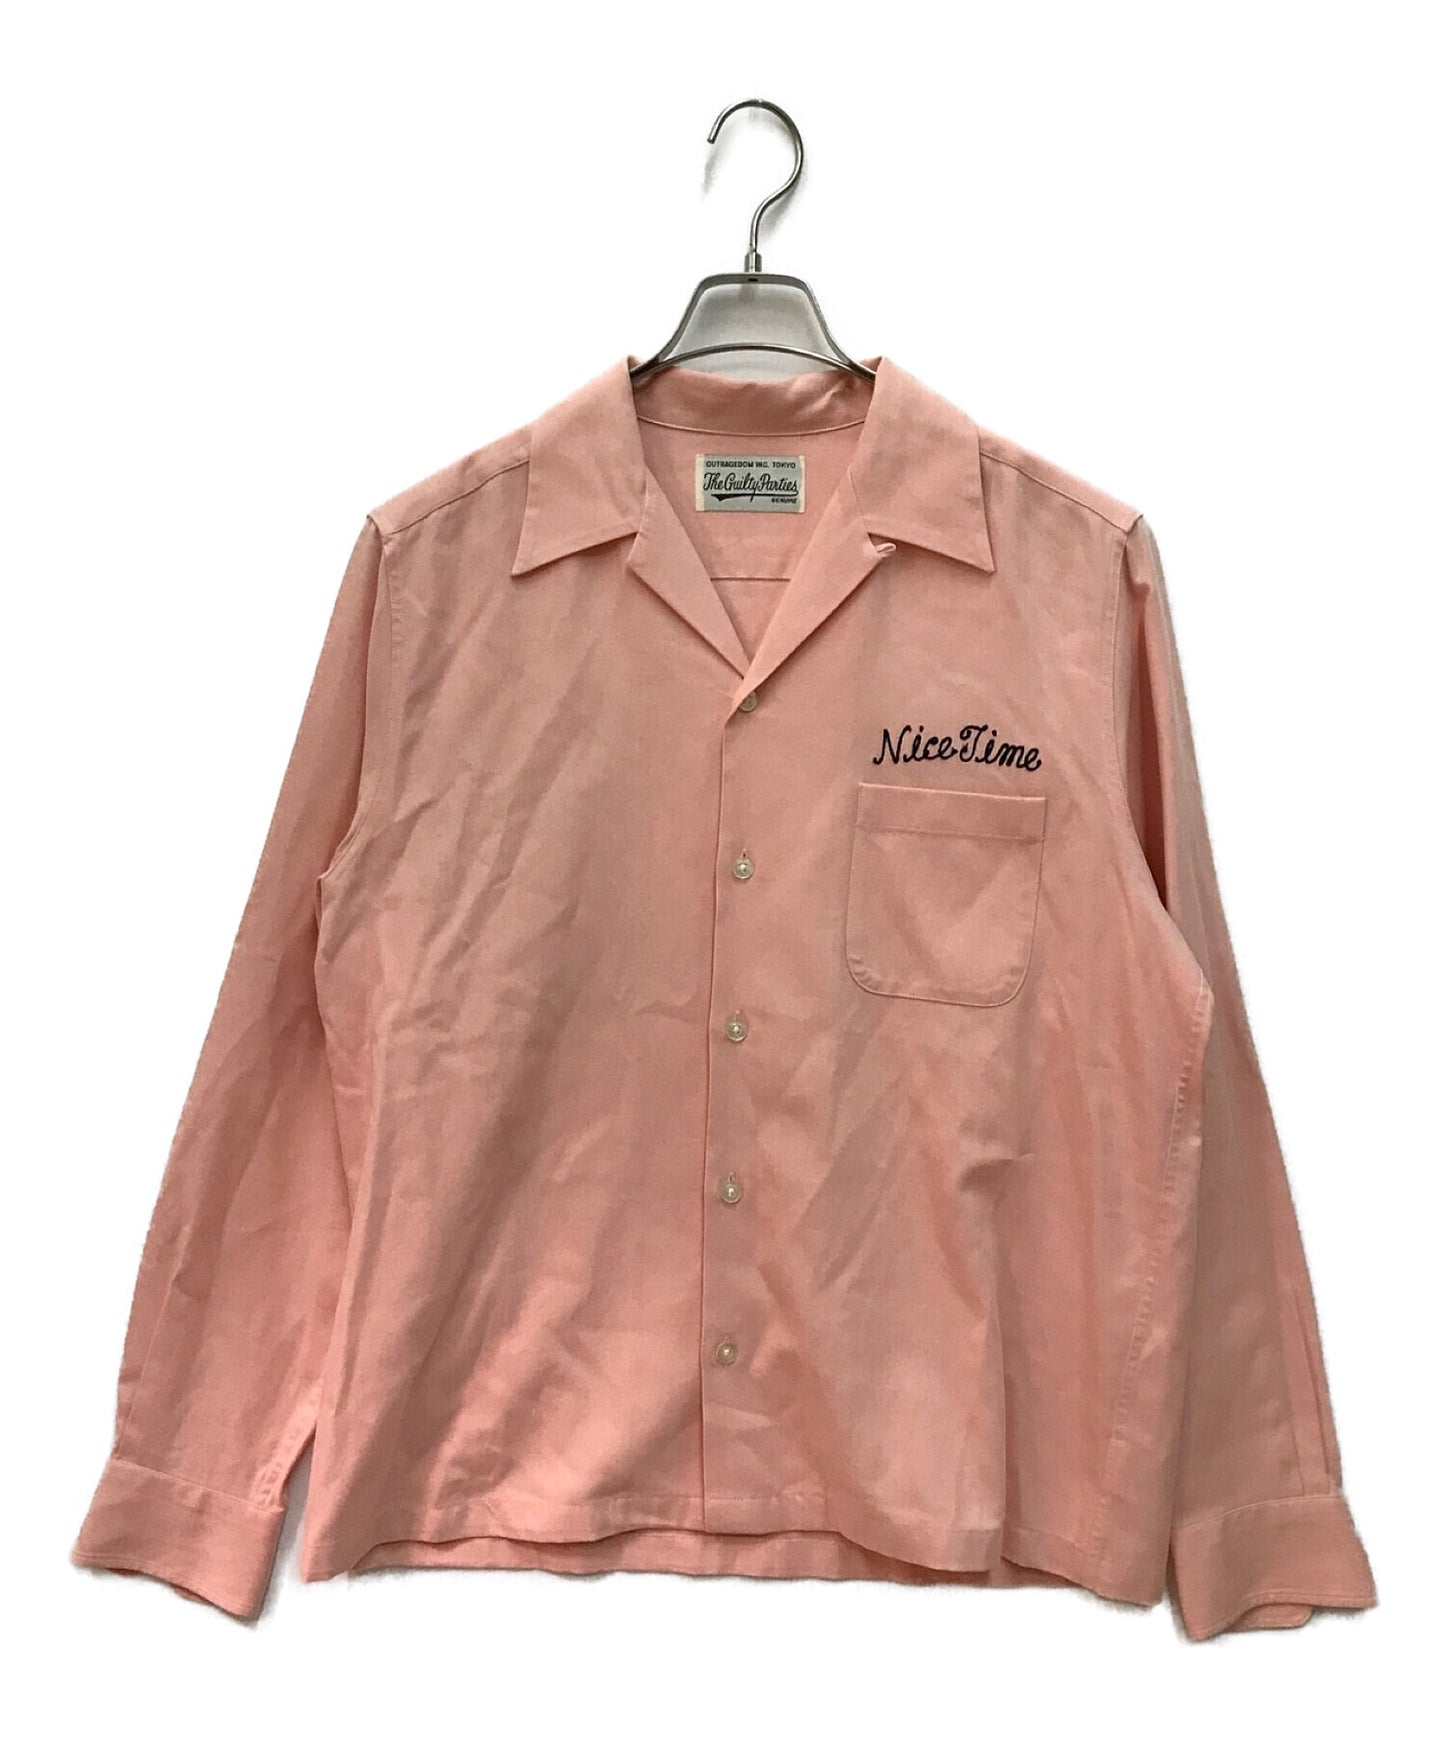 WACKO MARIA 50'S SHIRT L/S long sleeve shirt open collar shirt bowling shirt